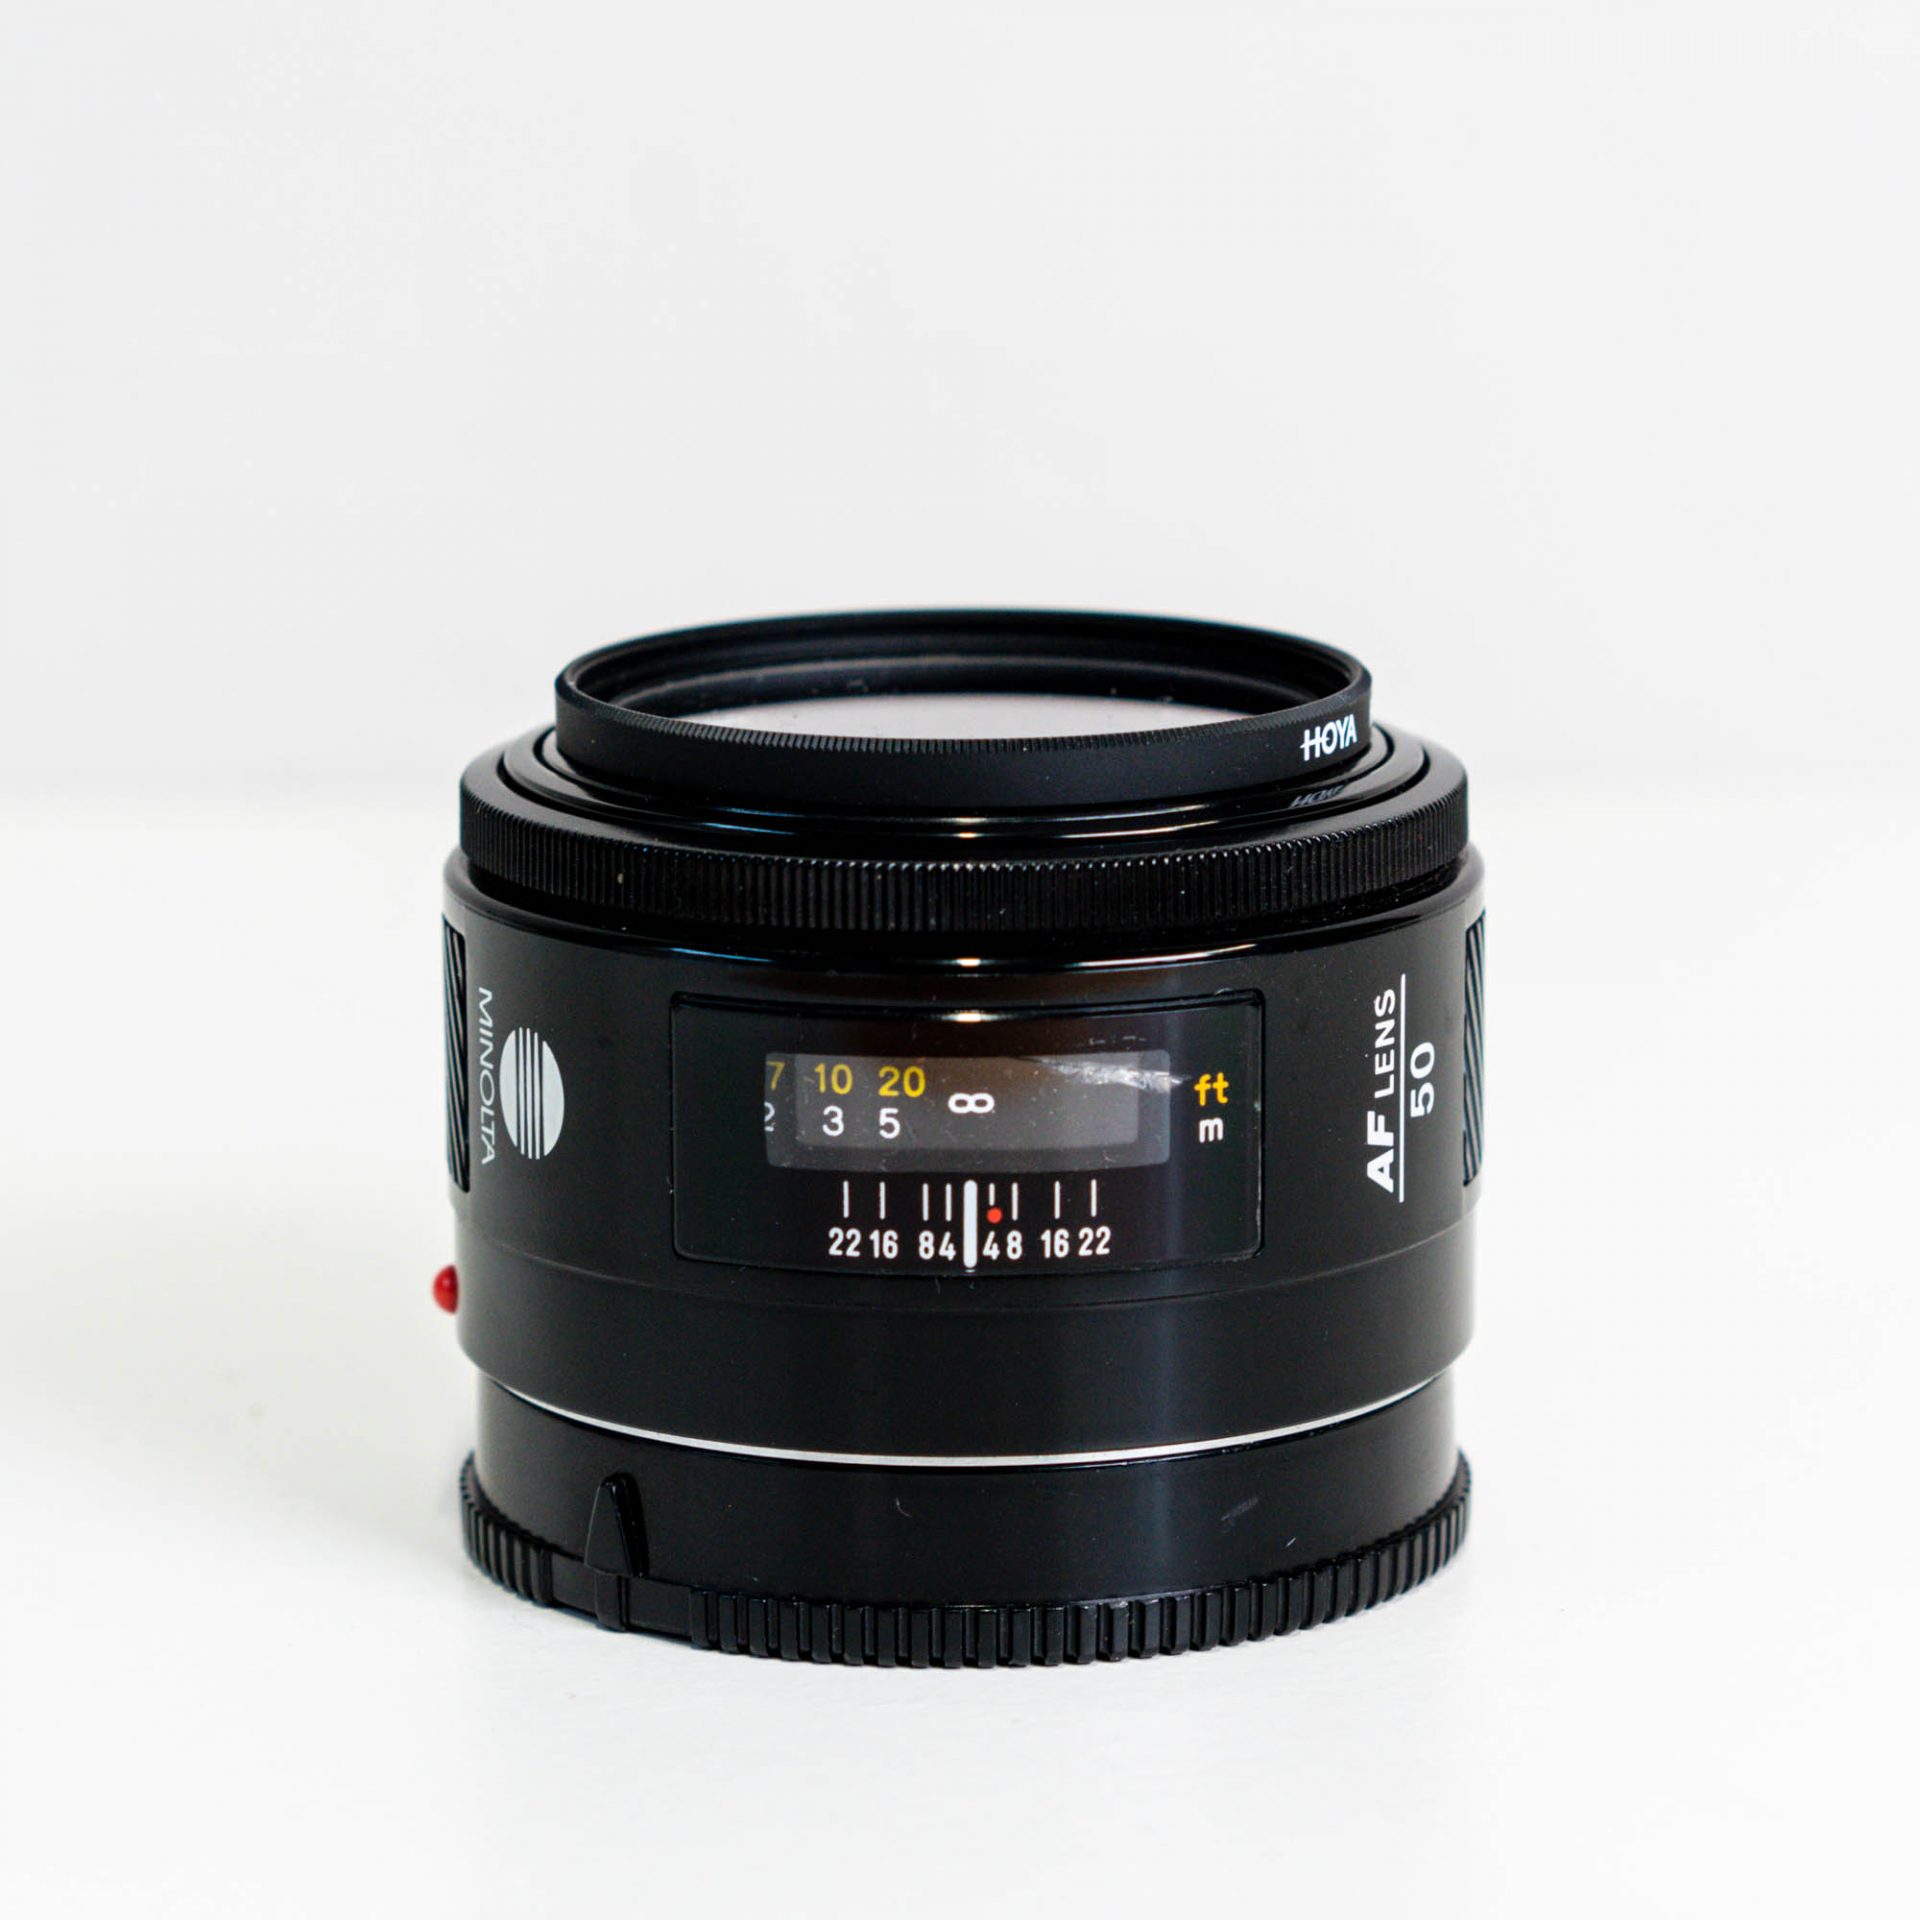 USED: Minolta AF 50mm f/1.4 Lens